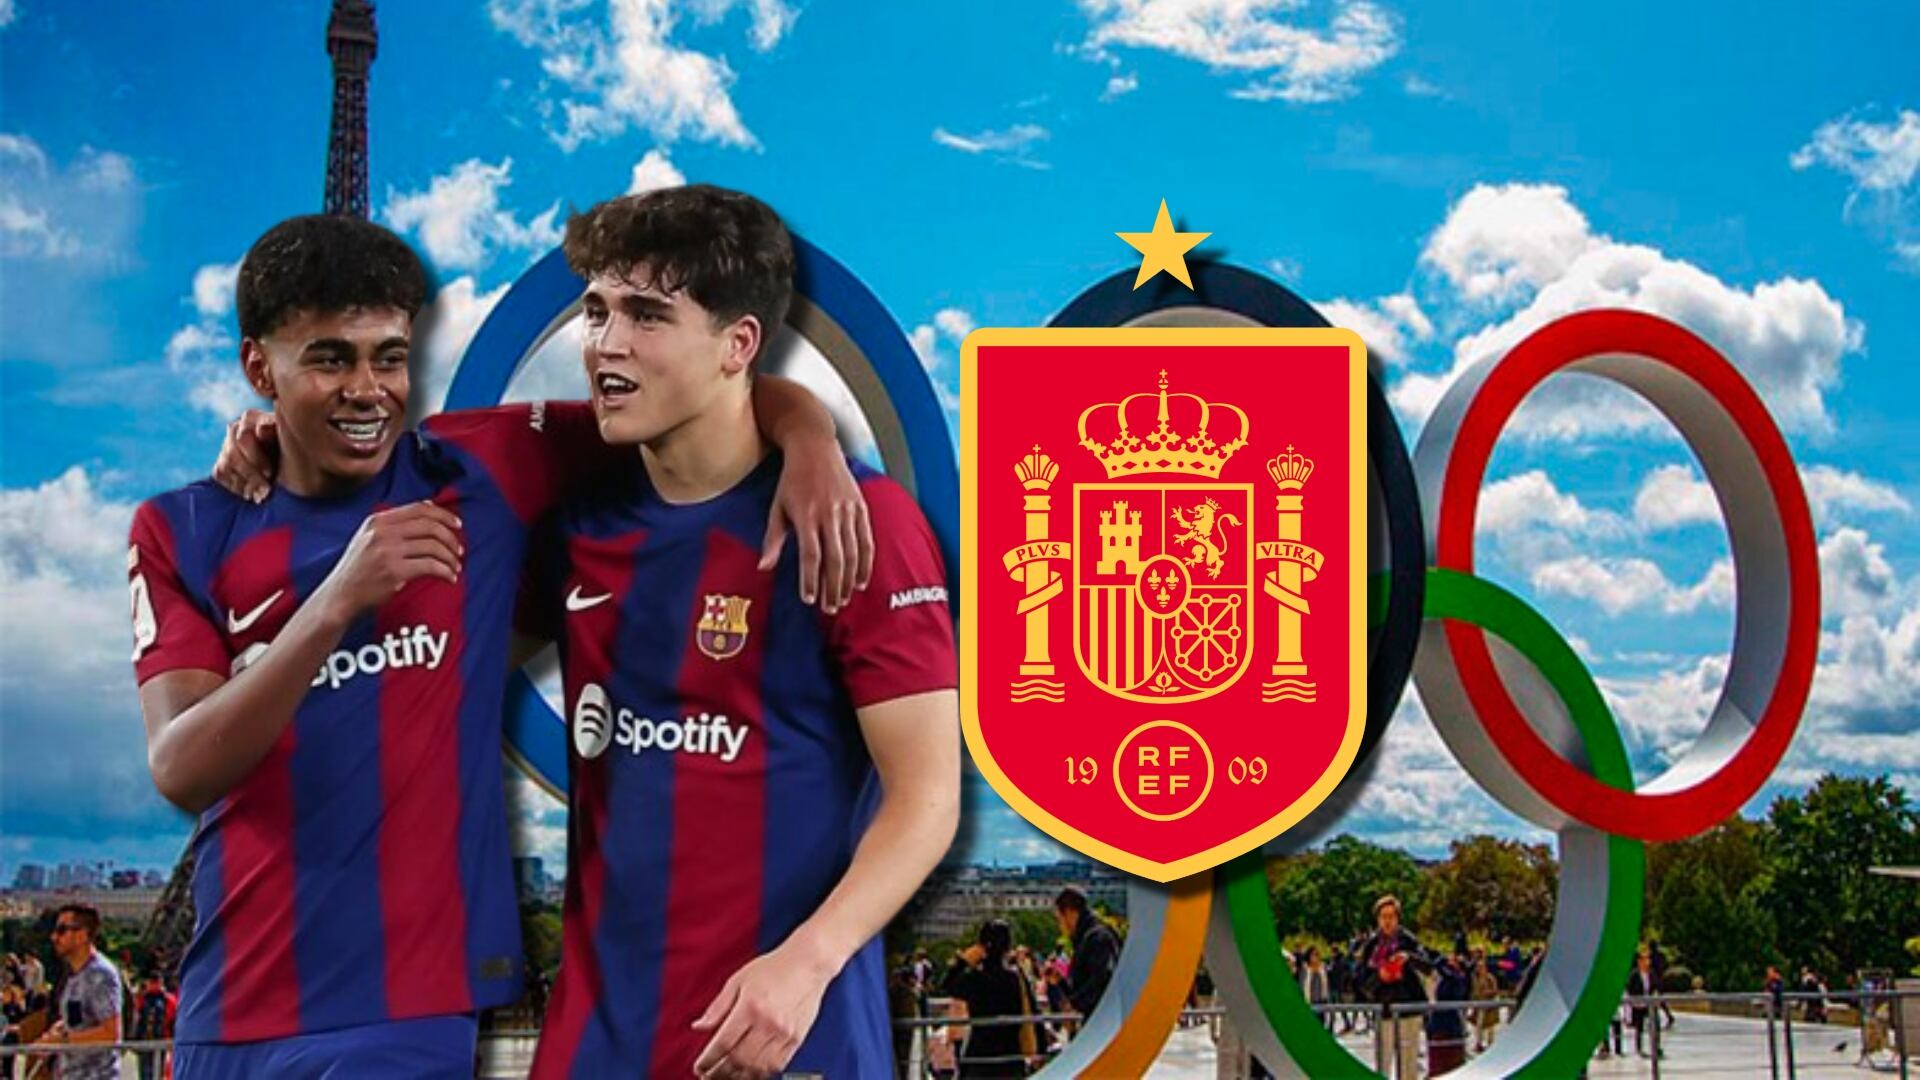 Yamal y Cubarsí están en duda, el 1er jugador de España confirmado para los JJOO